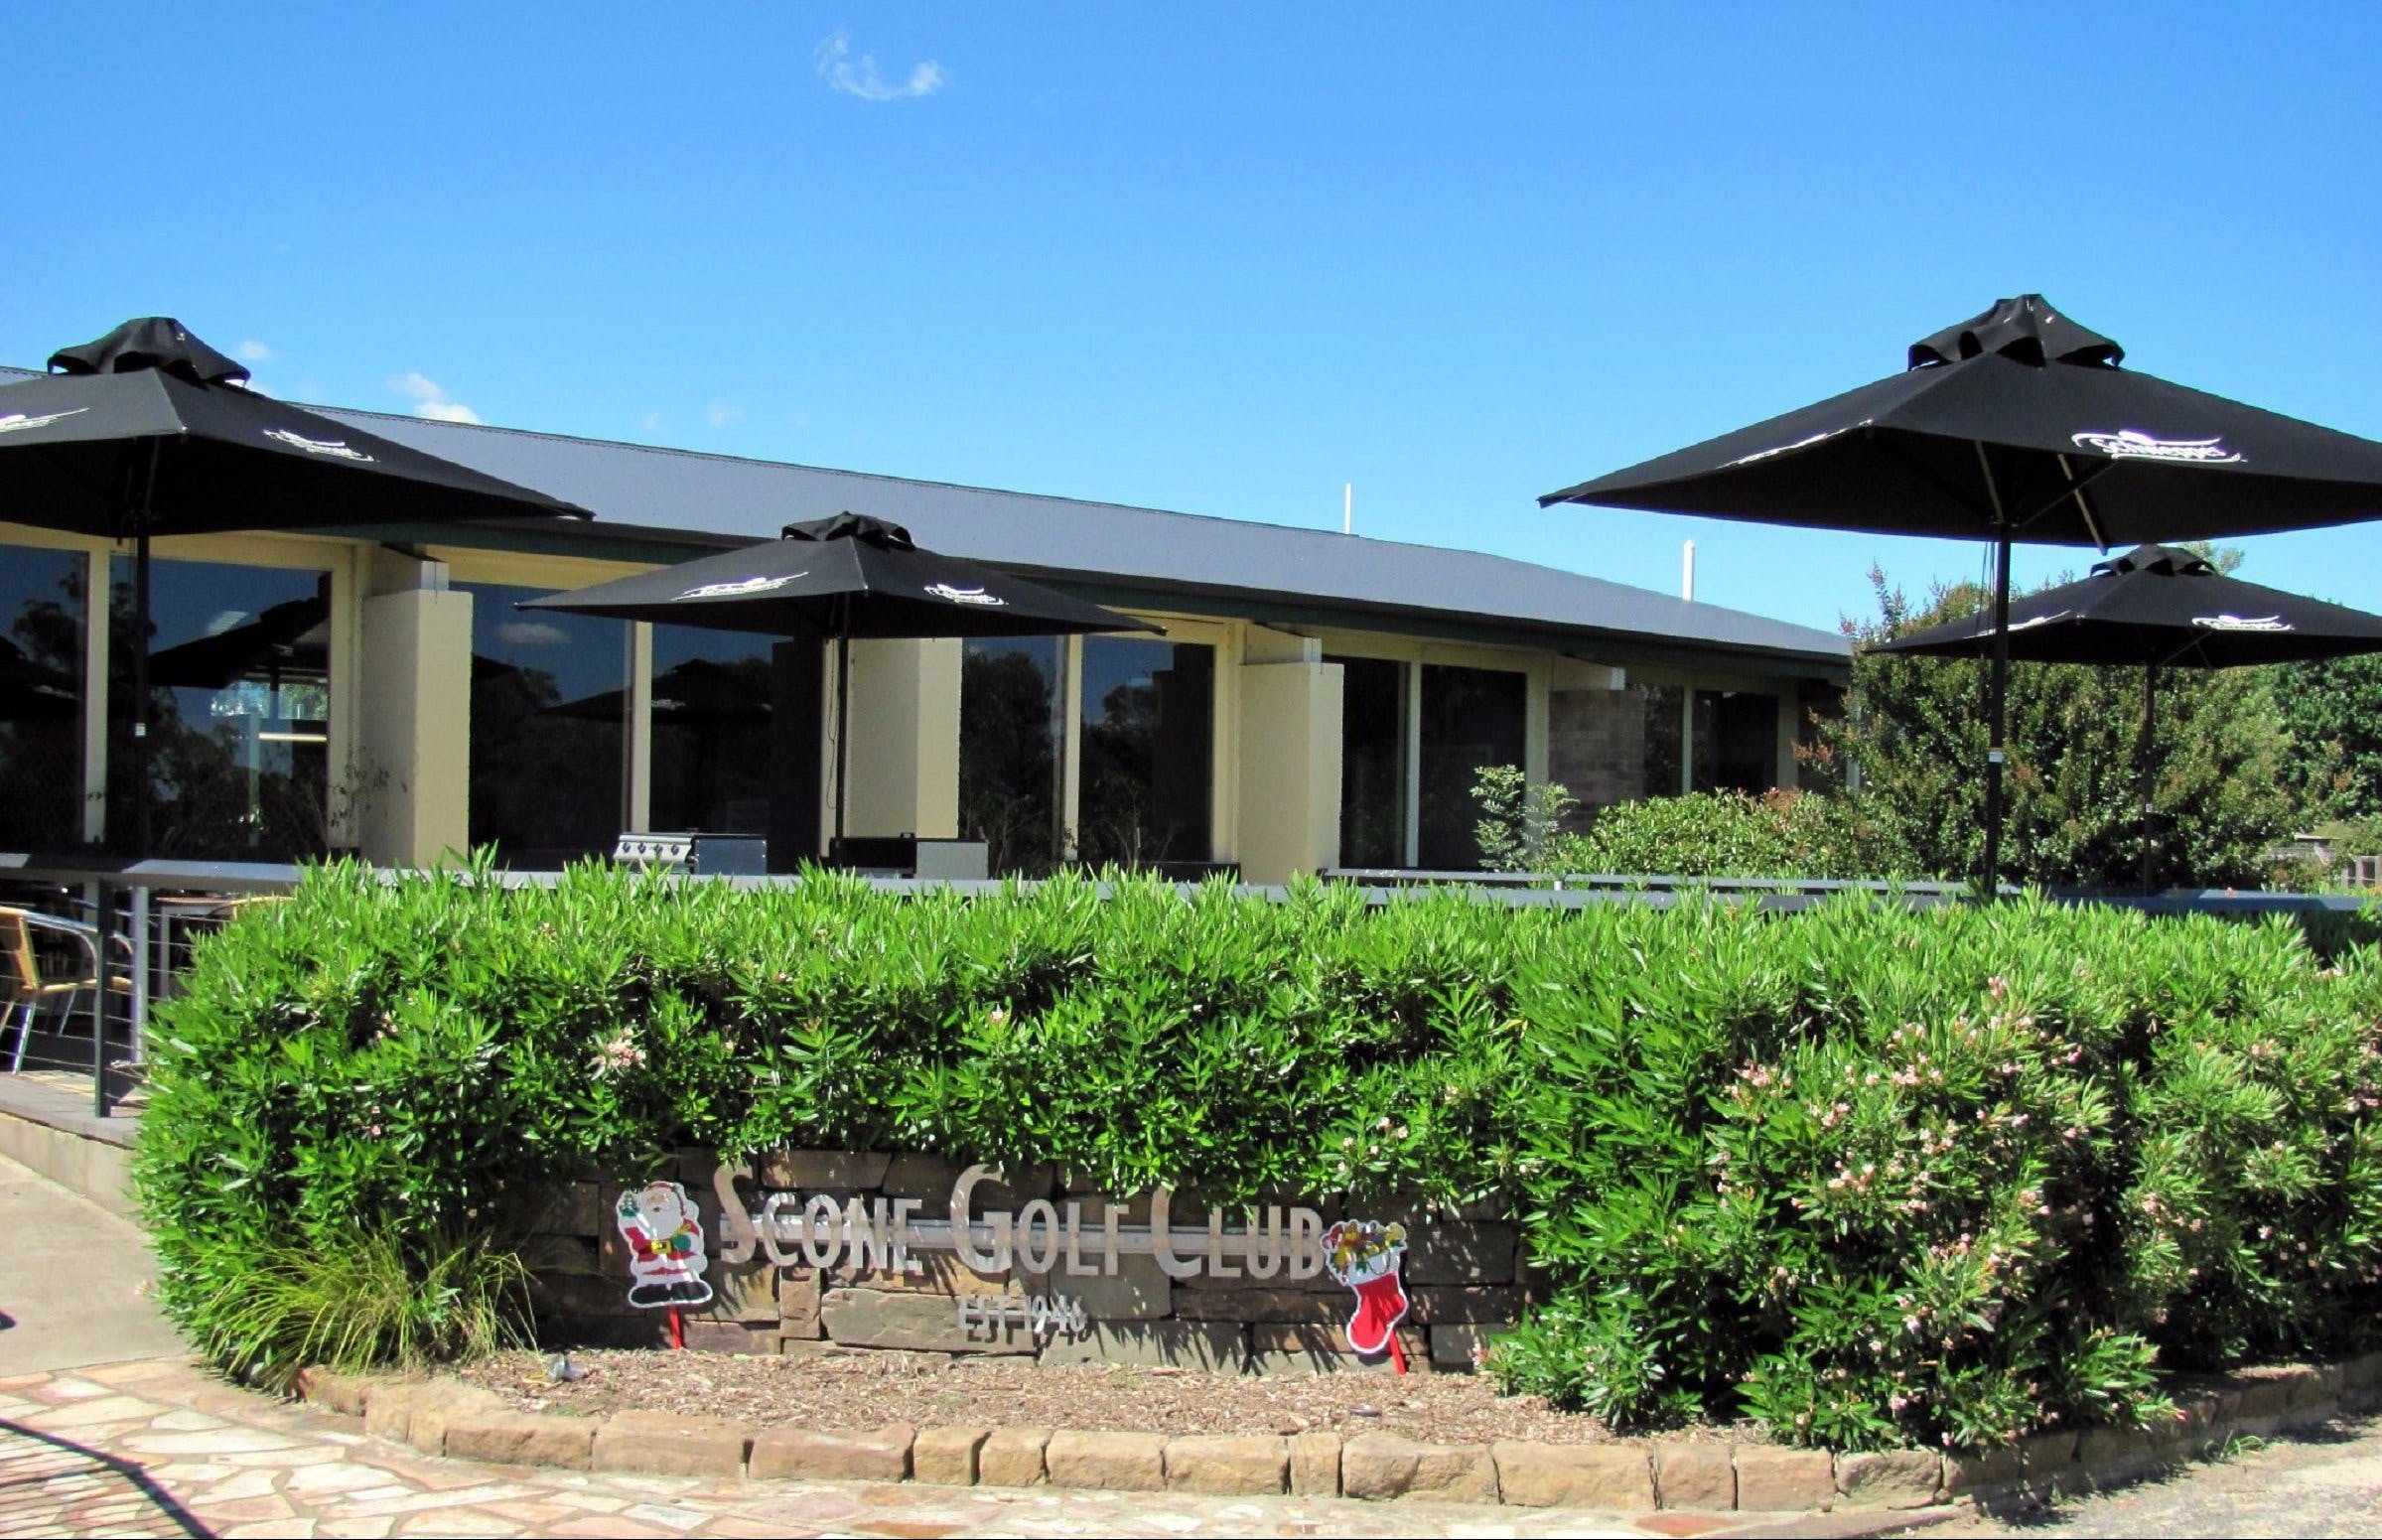 Scone Golf Club - Tourism Adelaide